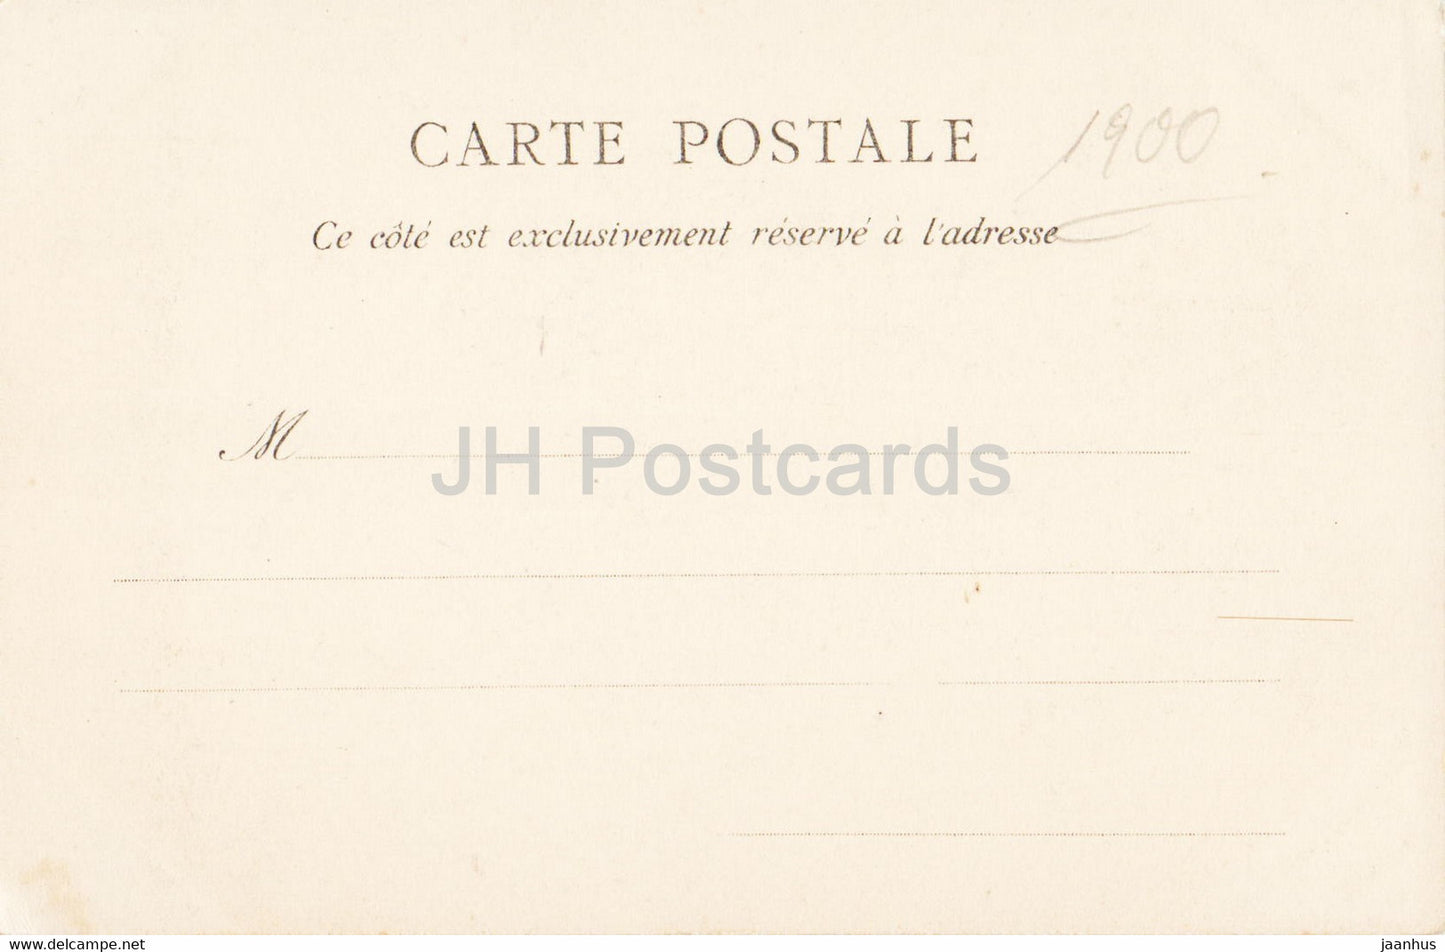 Paris - Notre Dame - Fassade - Kathedrale - 1 - alte Postkarte - Frankreich - unbenutzt